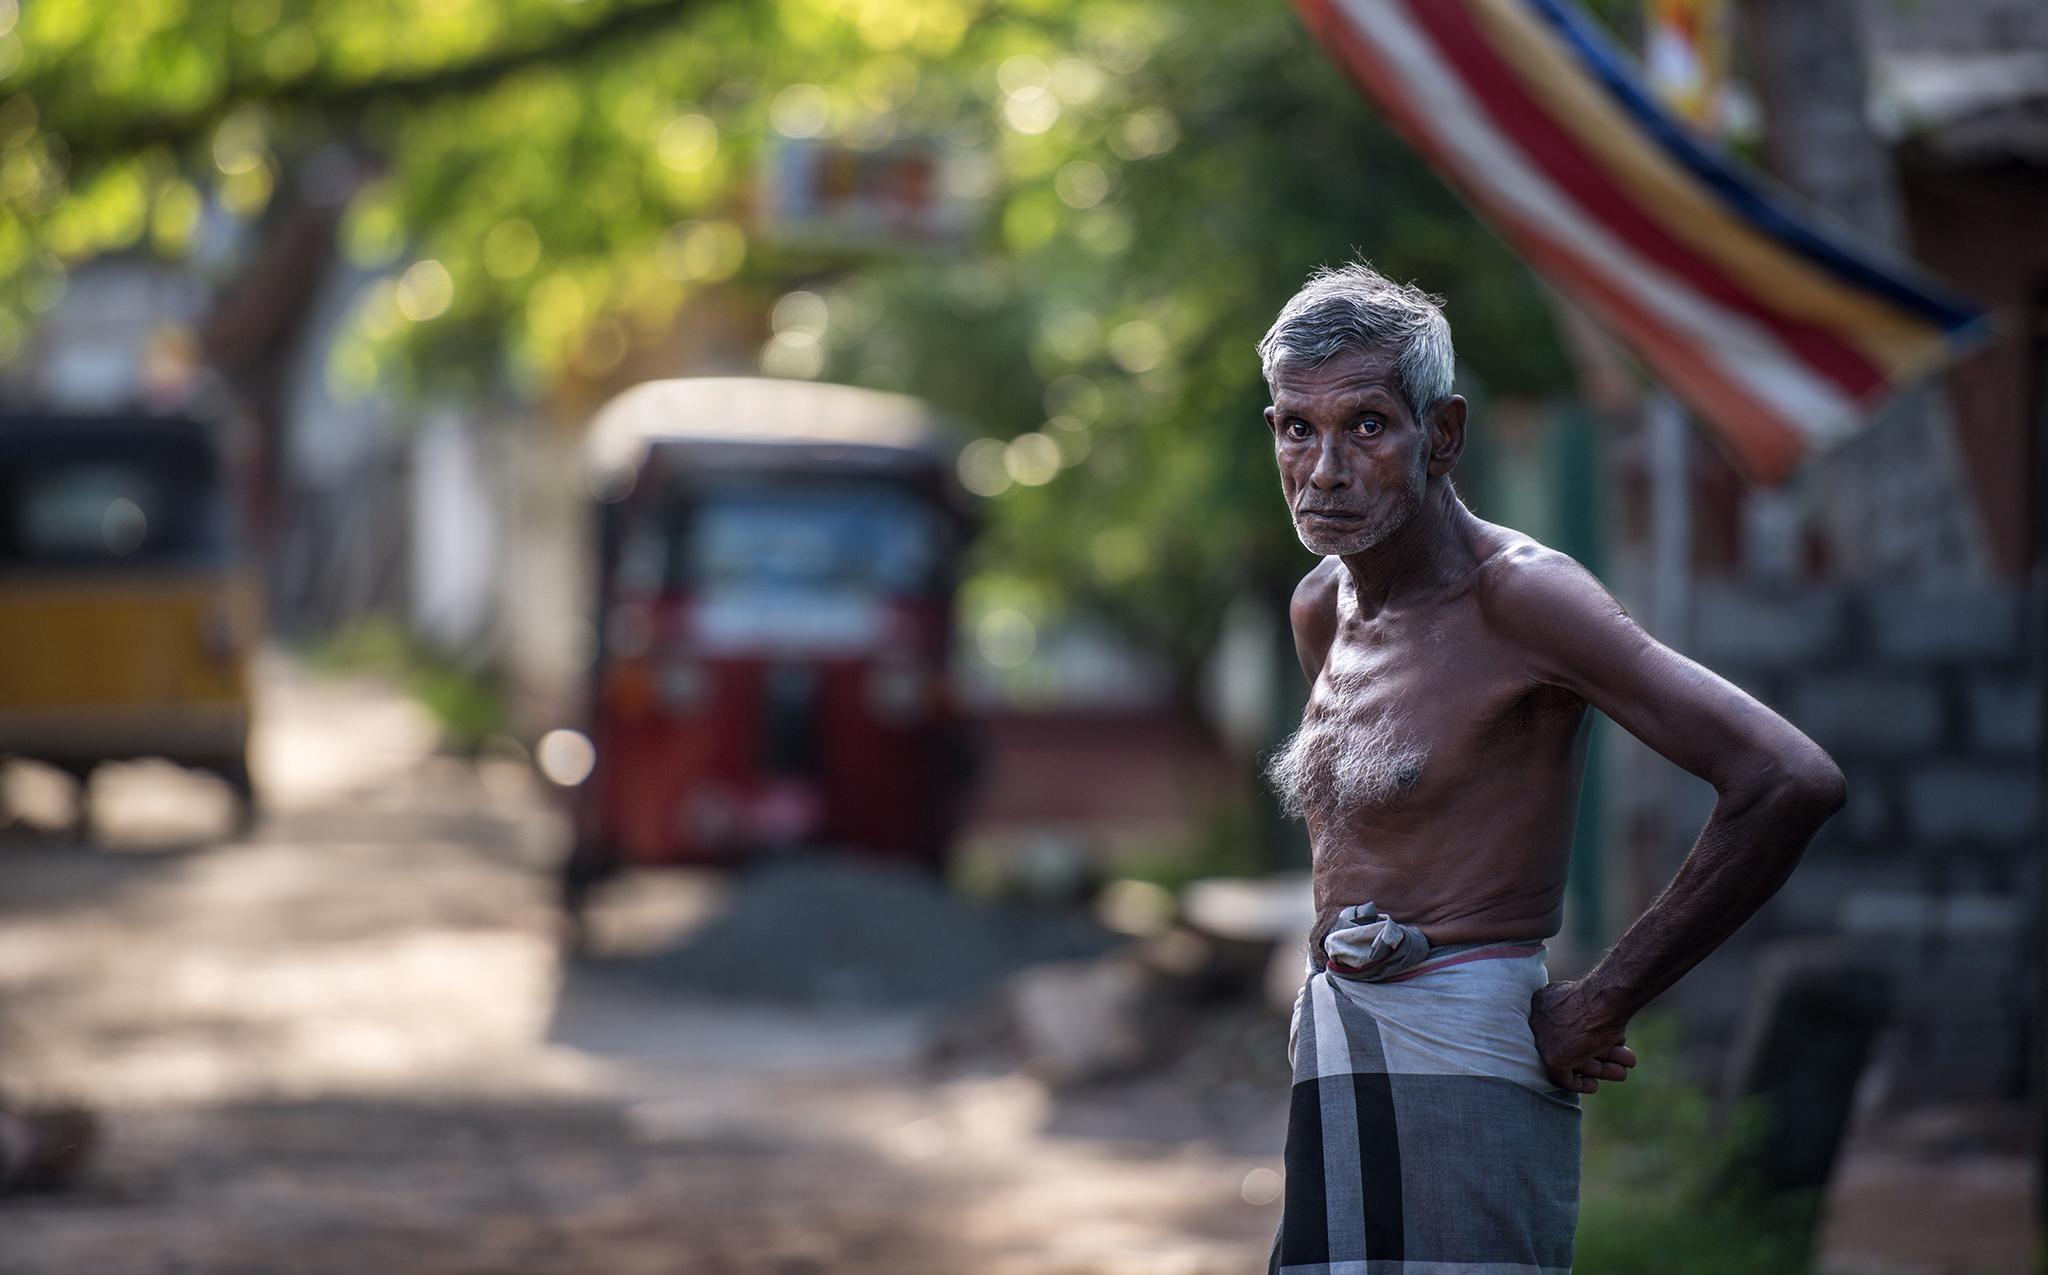 An Old man from Sri-Lanka